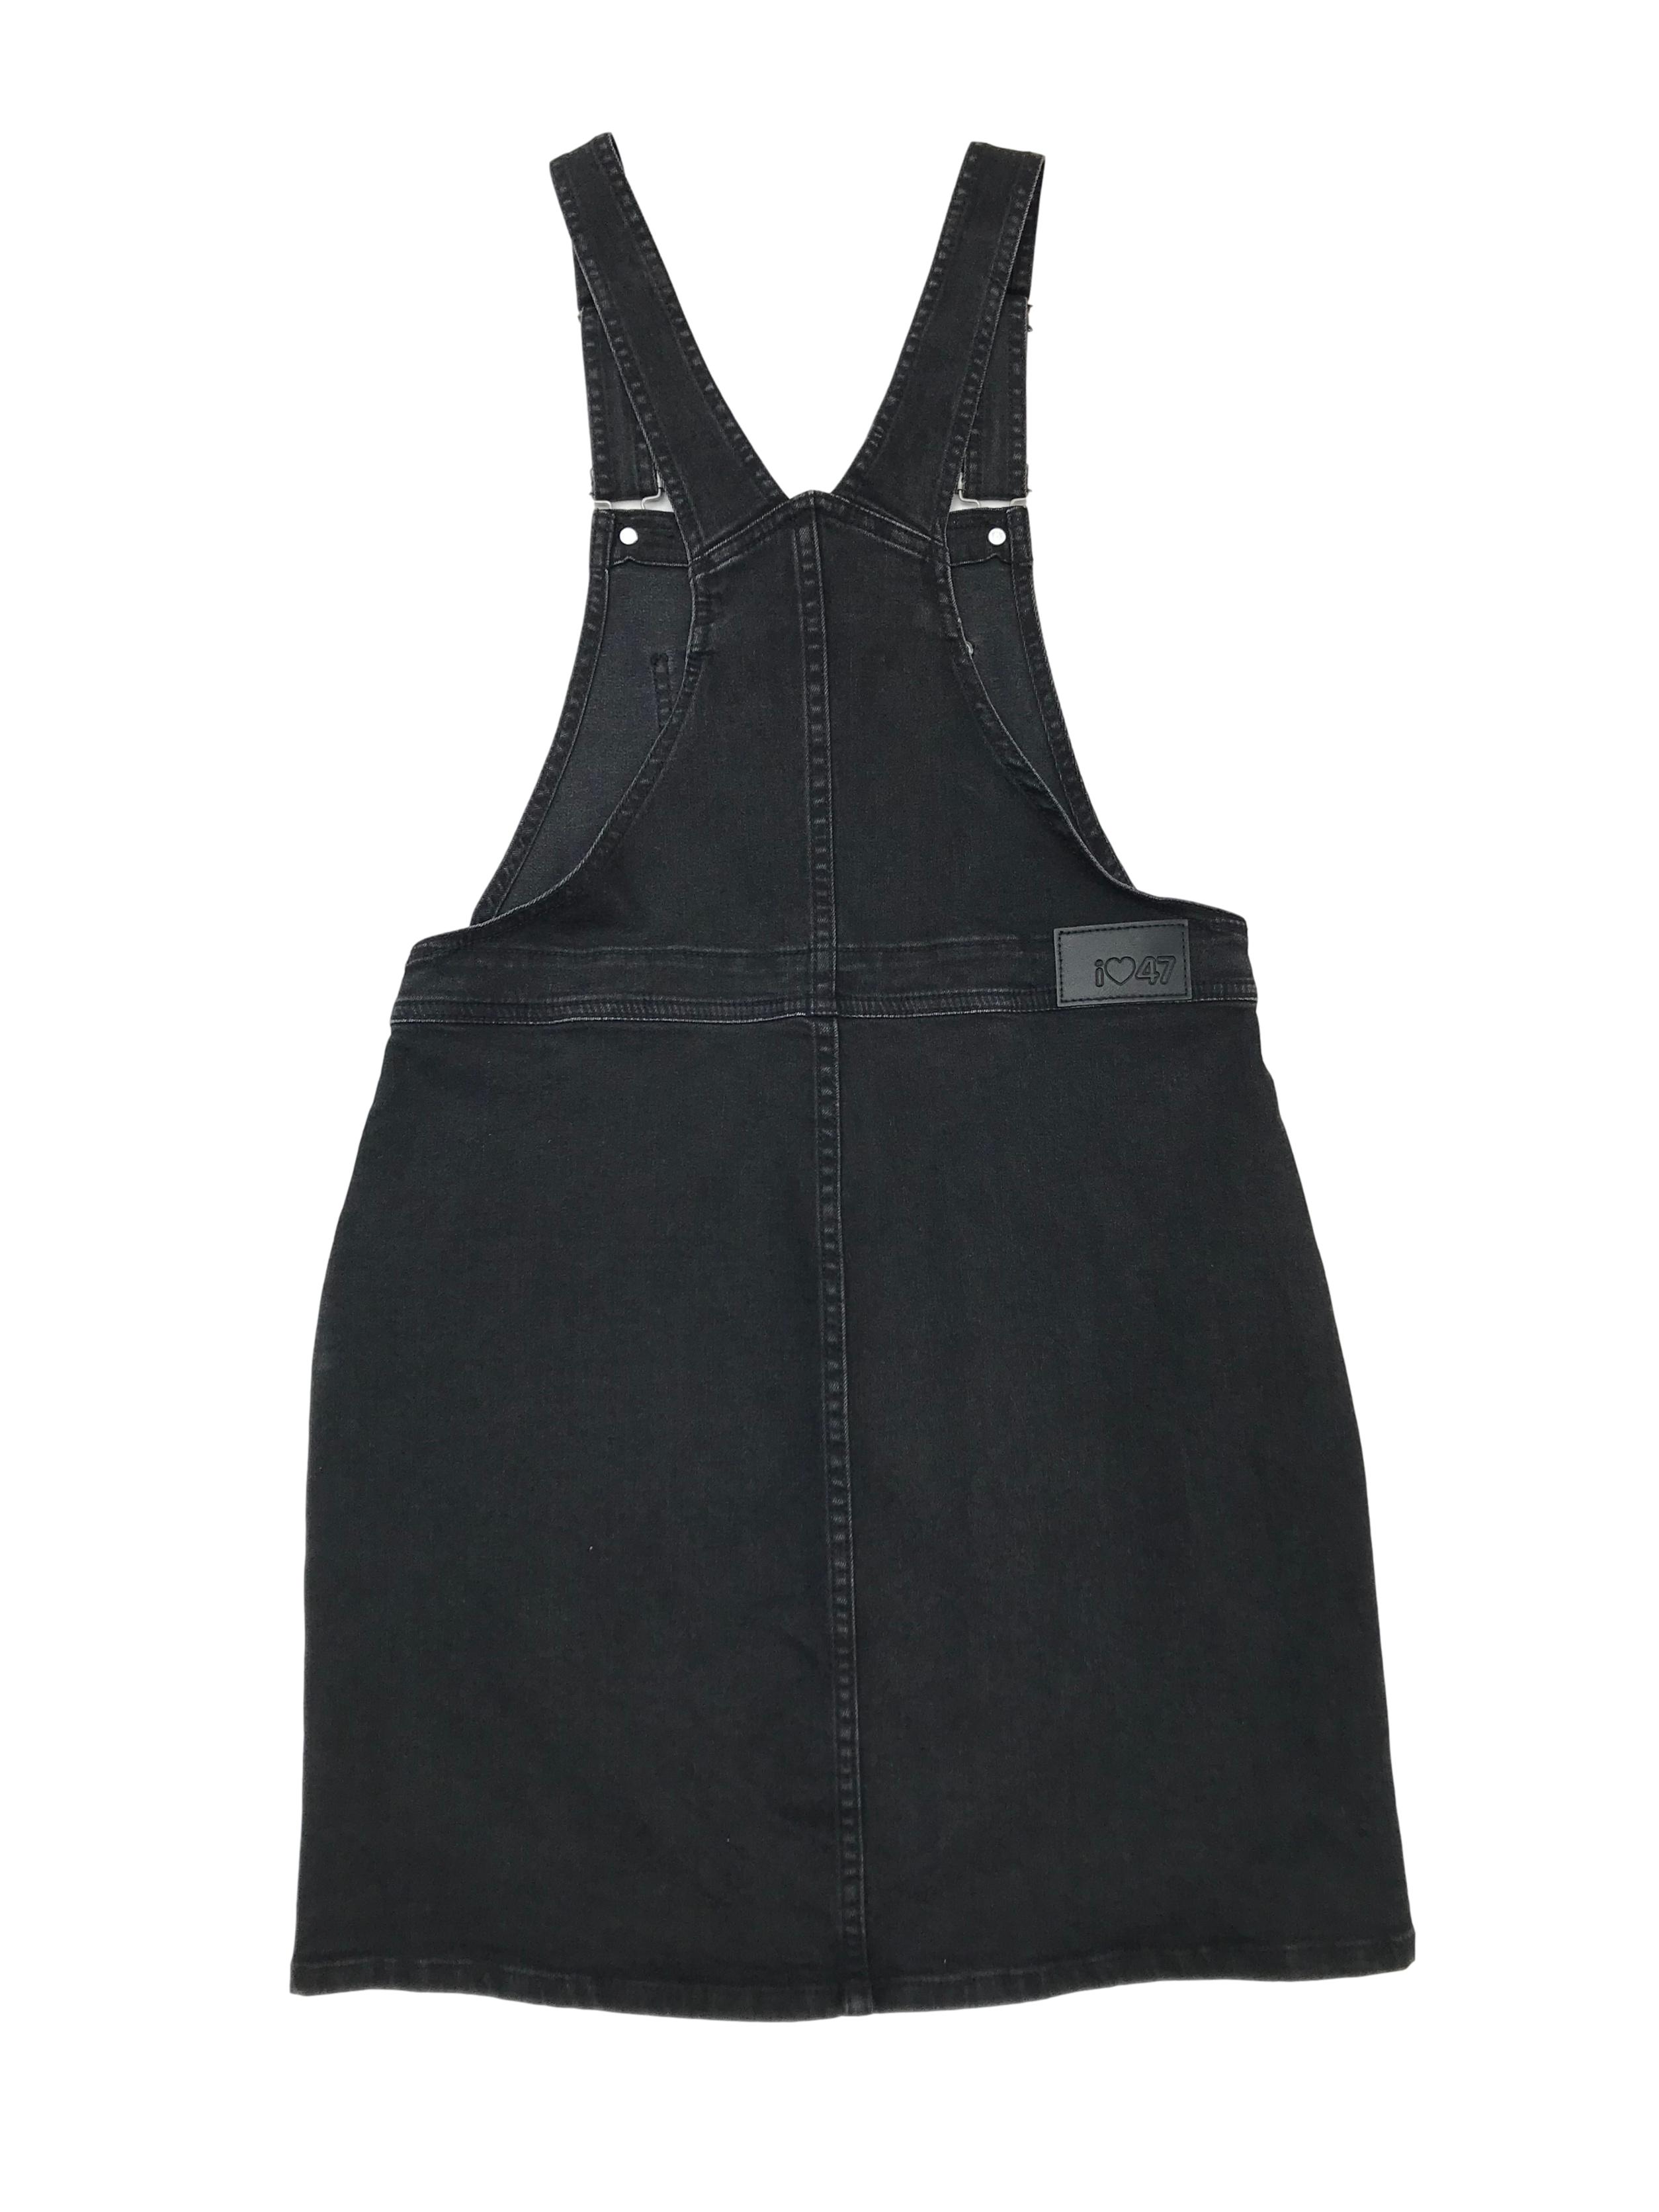 Jumper 47street denim stretch negro efecto lavado con botones y bolsillos laterales. Citnura 78cm Largo falda 45cm 